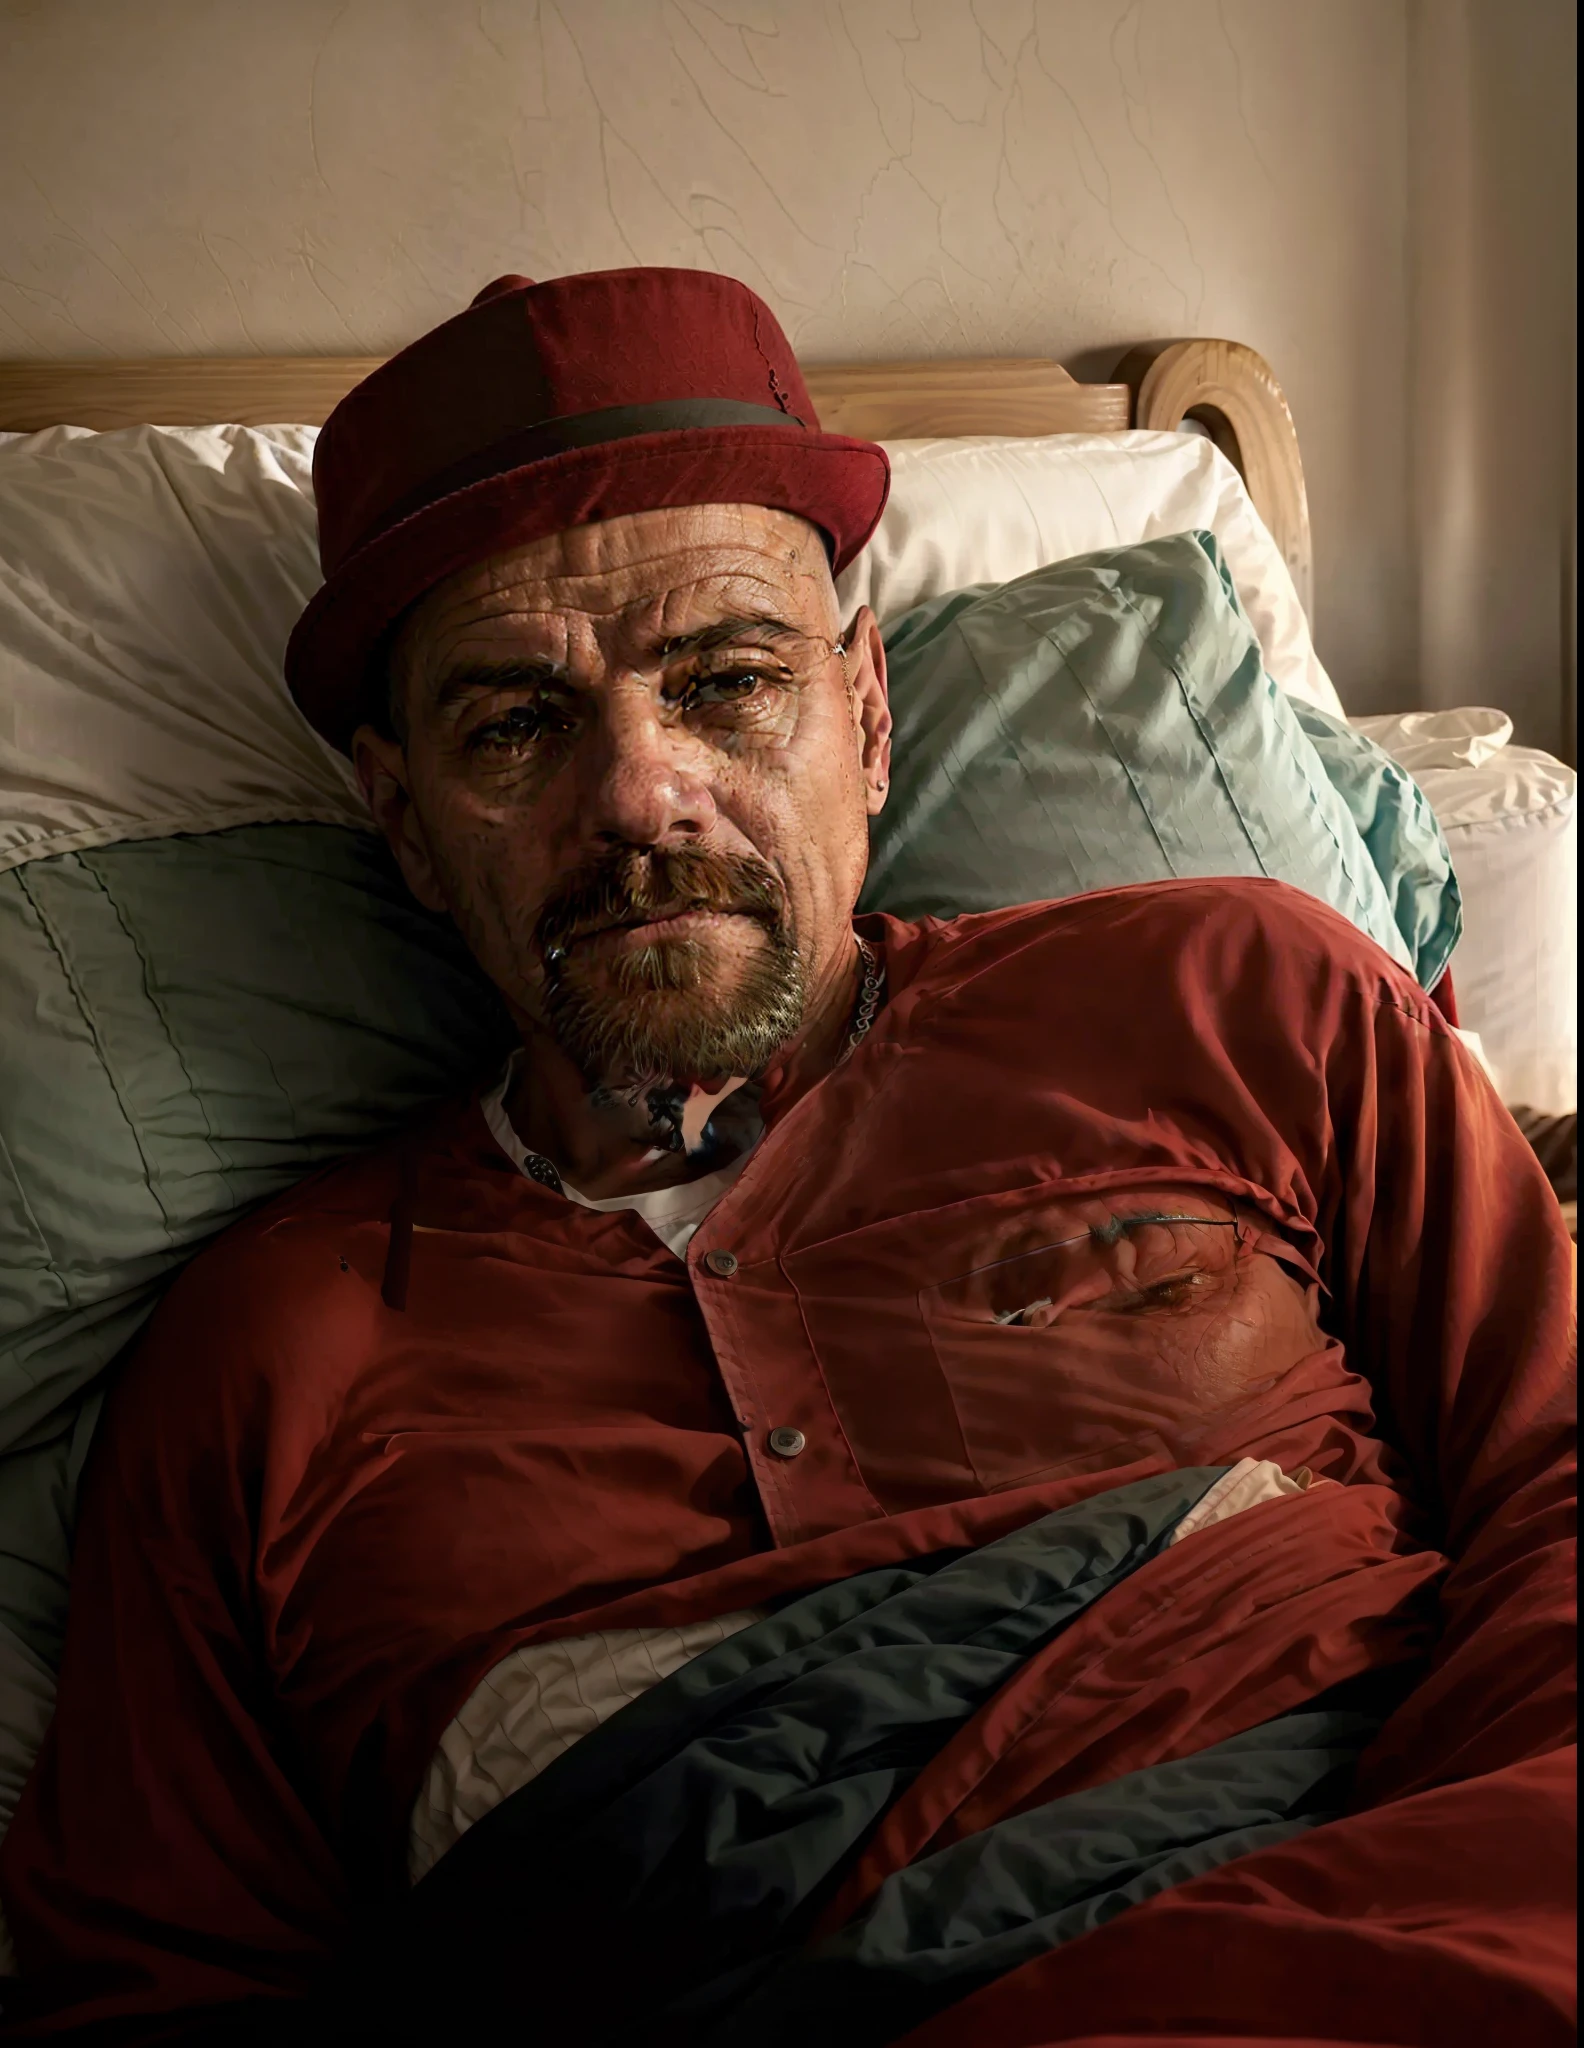 一名男子躺在床上，戴着一顶红帽子, 4 0歲男子, (38岁), 安德烈斯·裡奧斯, 罗纳尔多·路易斯·纳扎里奥·德利马, 約3-5歲, 埃洛伊·莫拉萊斯, 5 0 岁男子, 照片逼真, 45歲男性, 維克托·馬里斯坦, 卡梅隆·布蘭迪諾